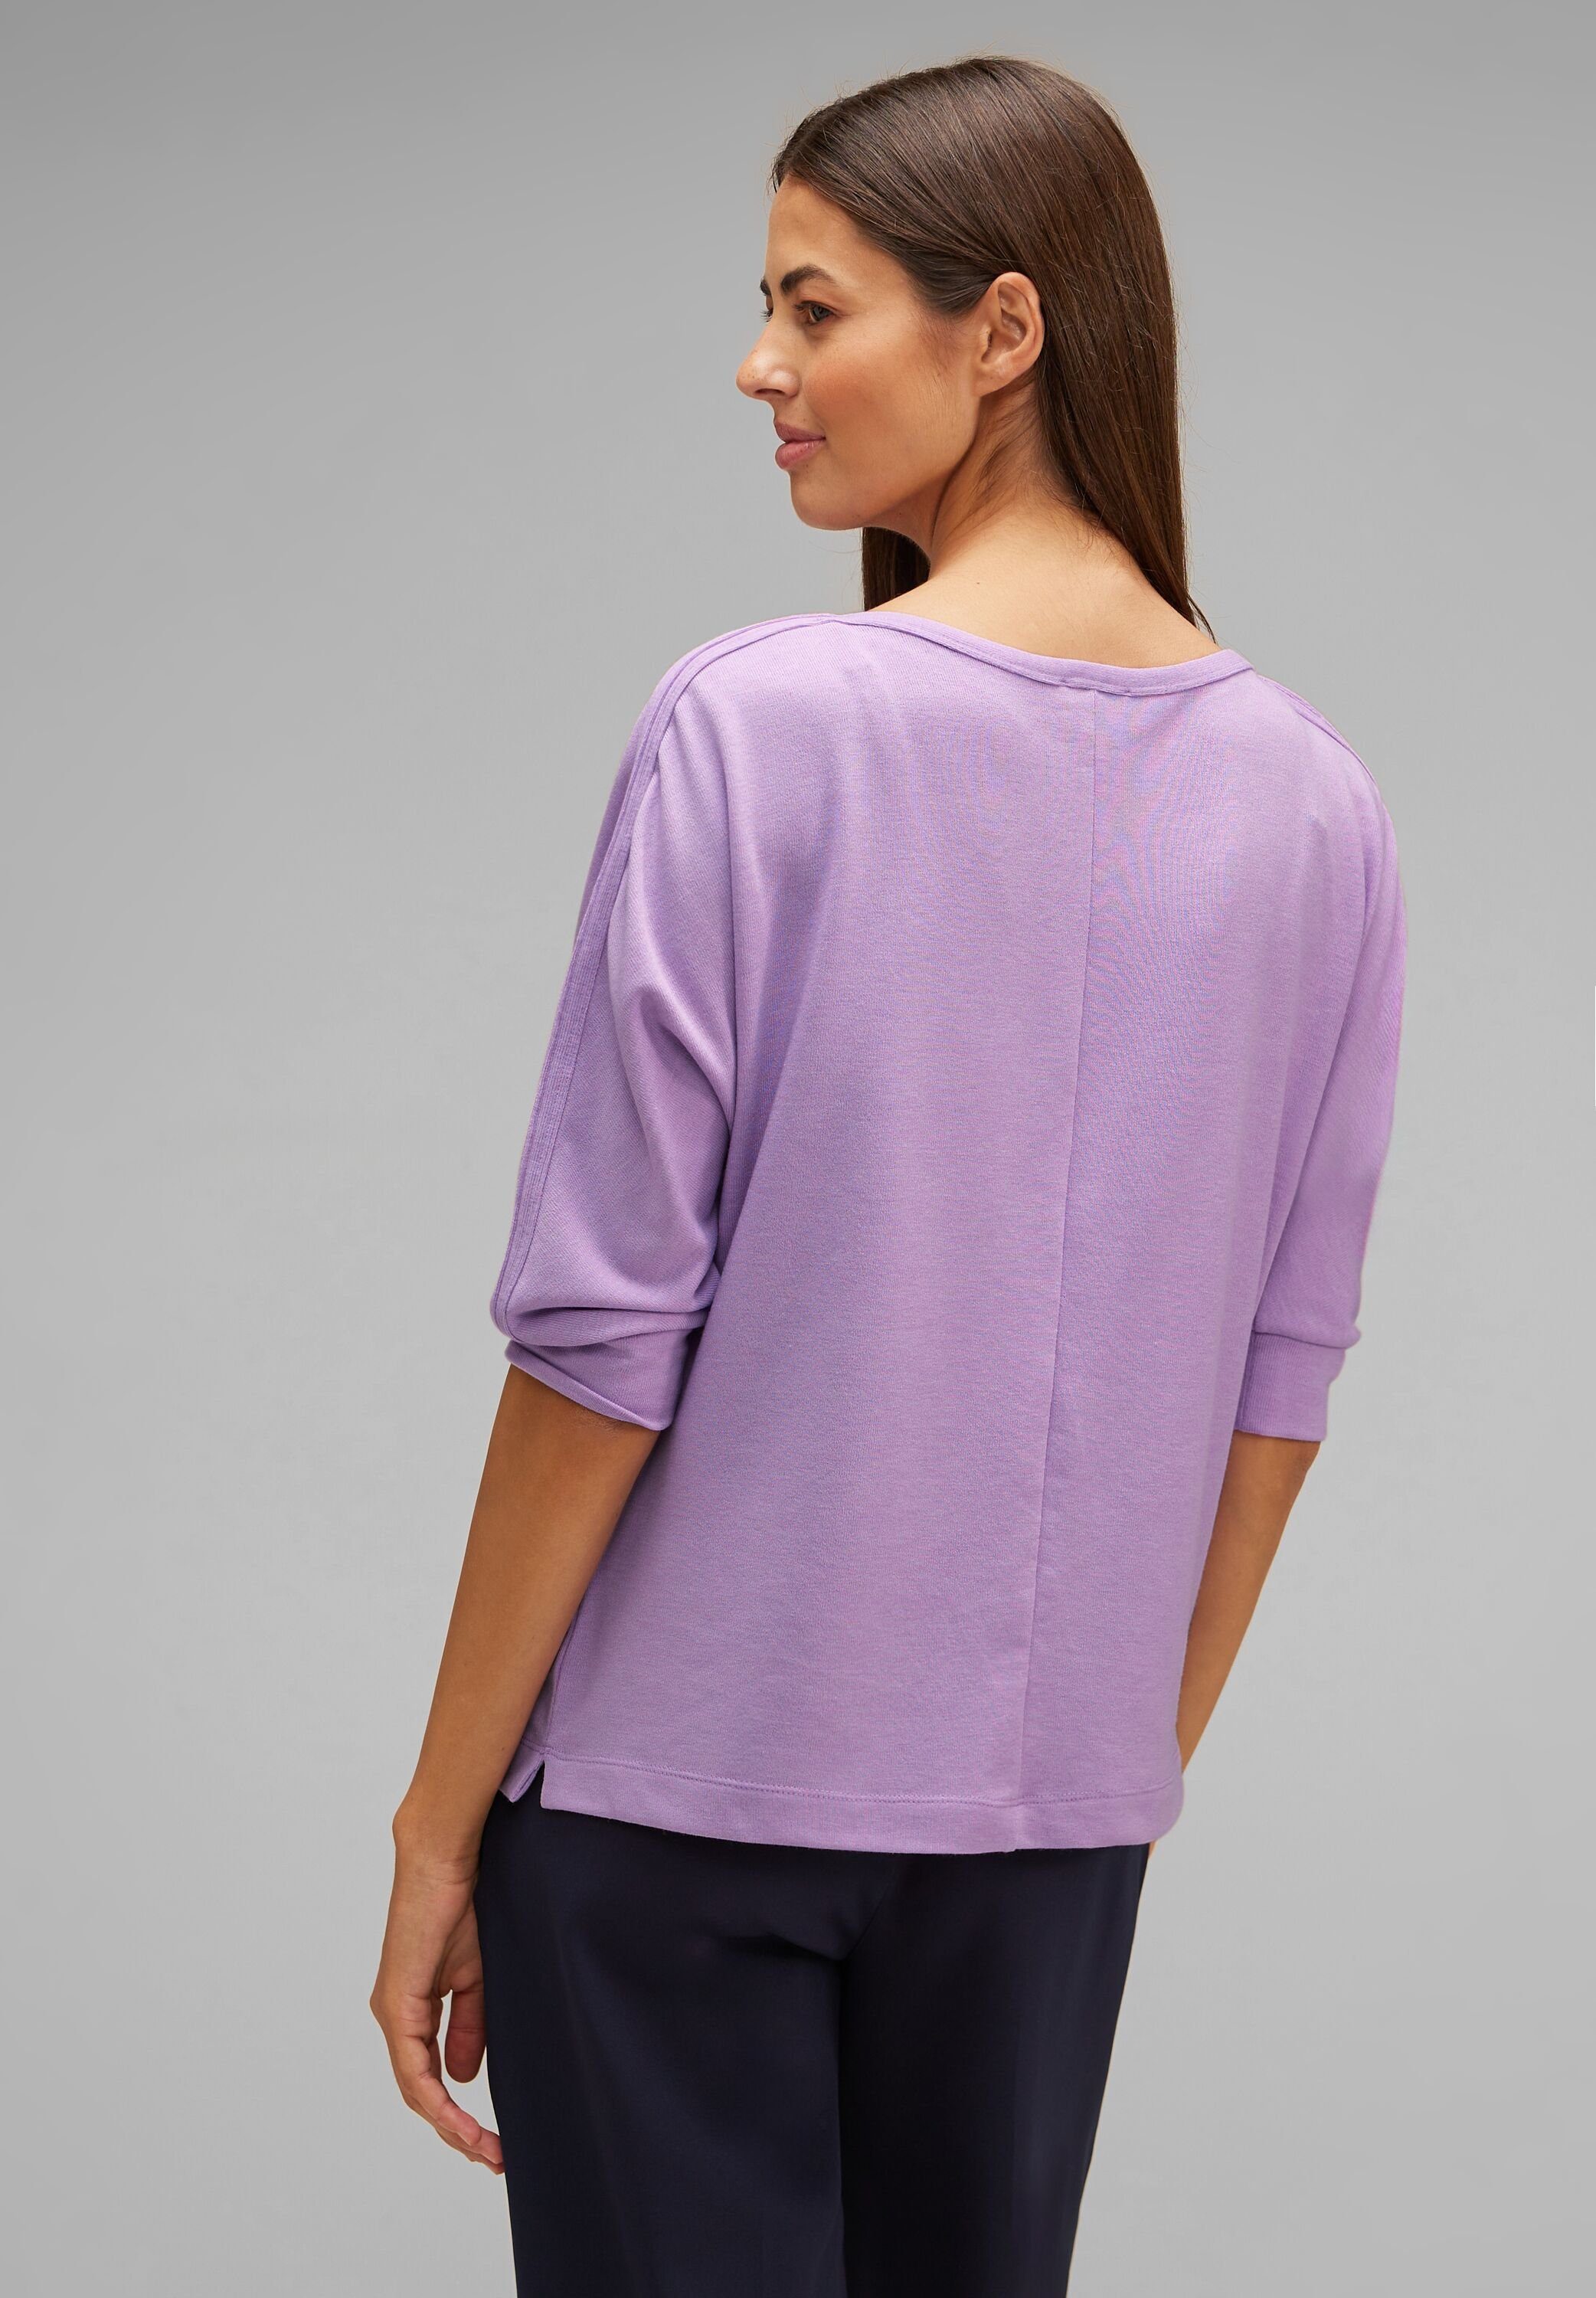 Shirt soft pure 3/4-Arm-Shirt STREET Schimmer Batwing Schimmernder Wording mit melange Typo-Print lilac ONE